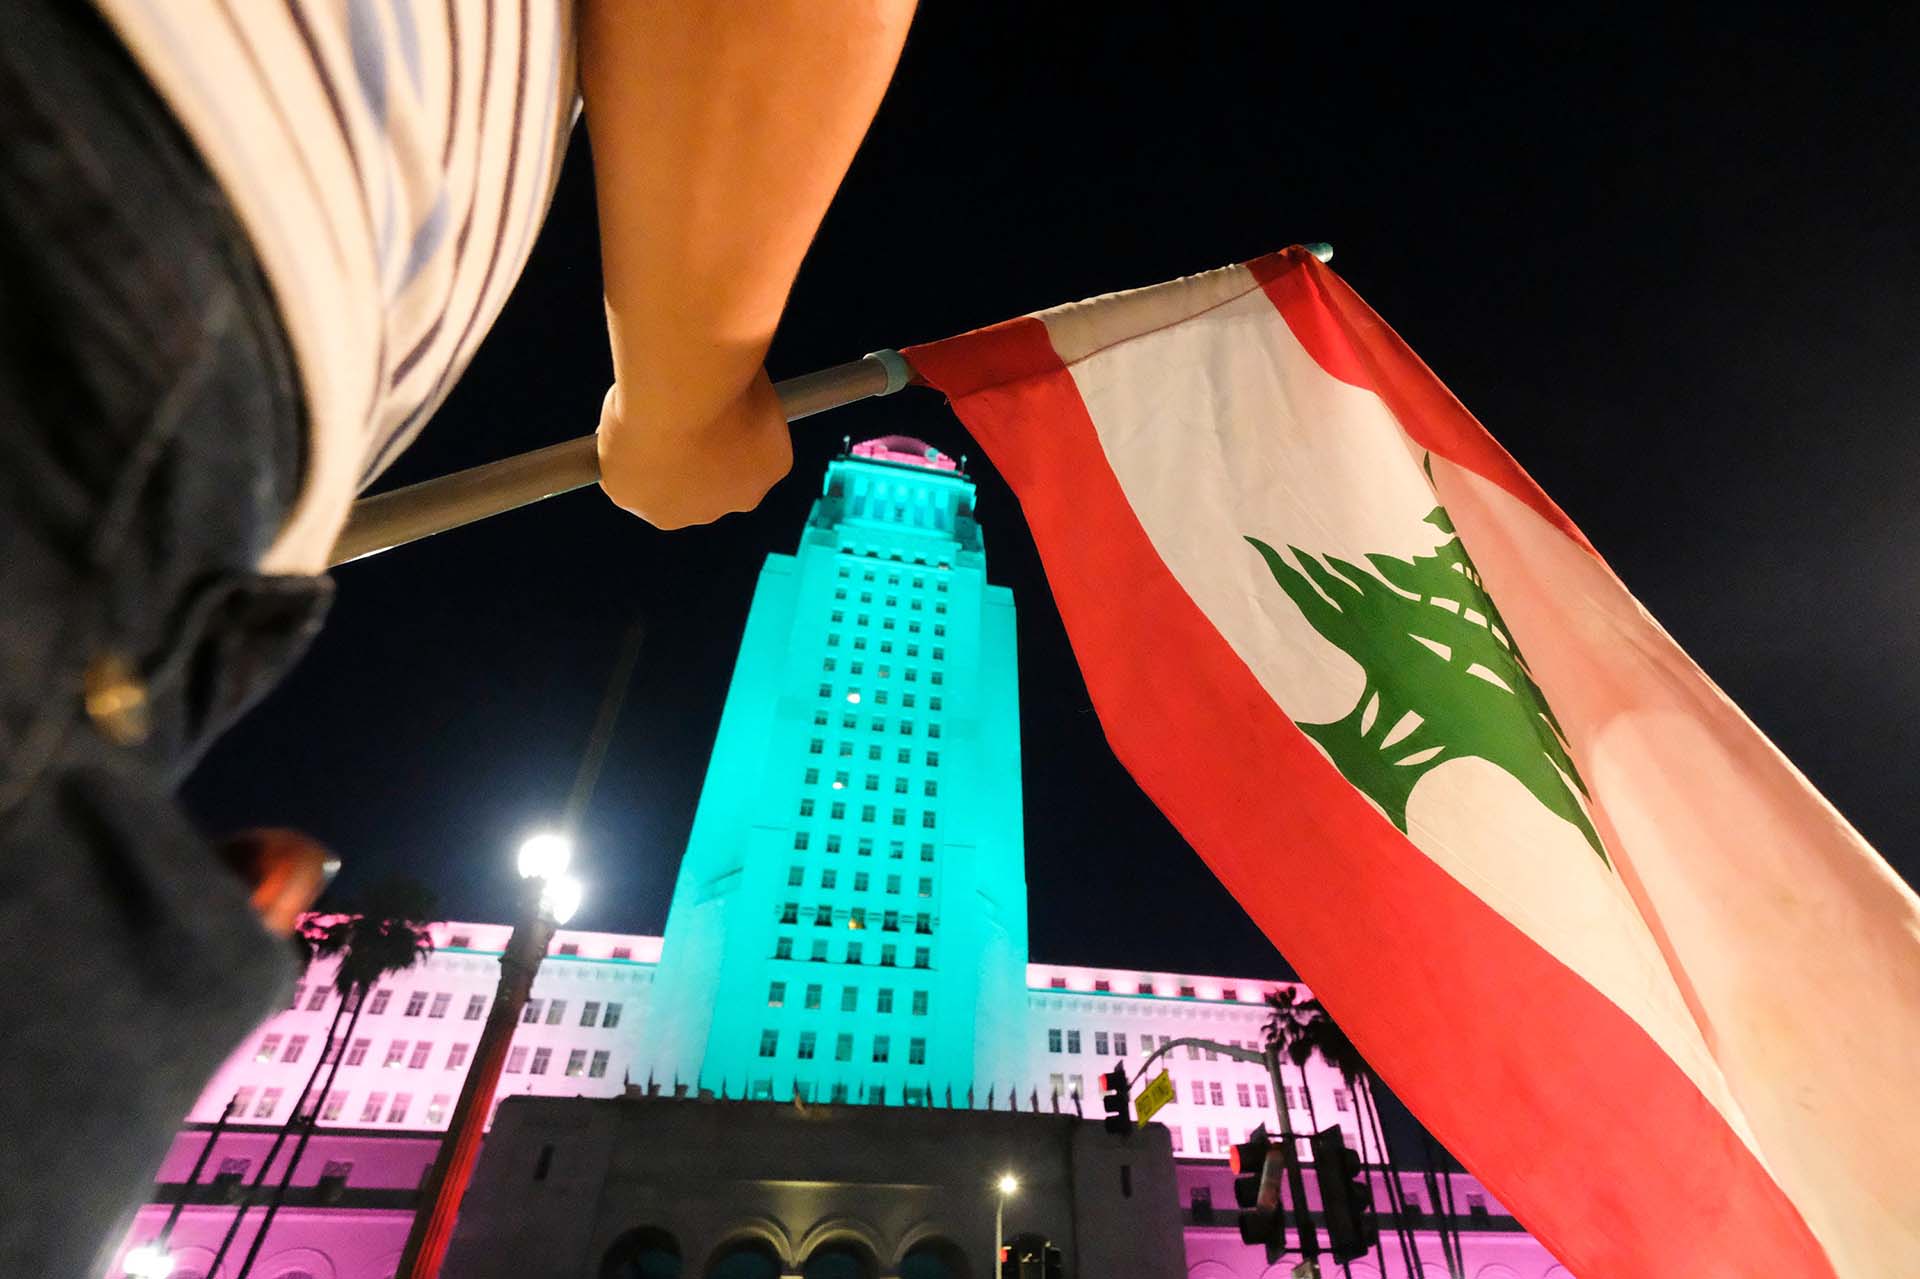 Edificio de la Municipalidad de Los Ángeles, California, iluminado con los colores de El Líbano, y una persona atajando la misma bandera.